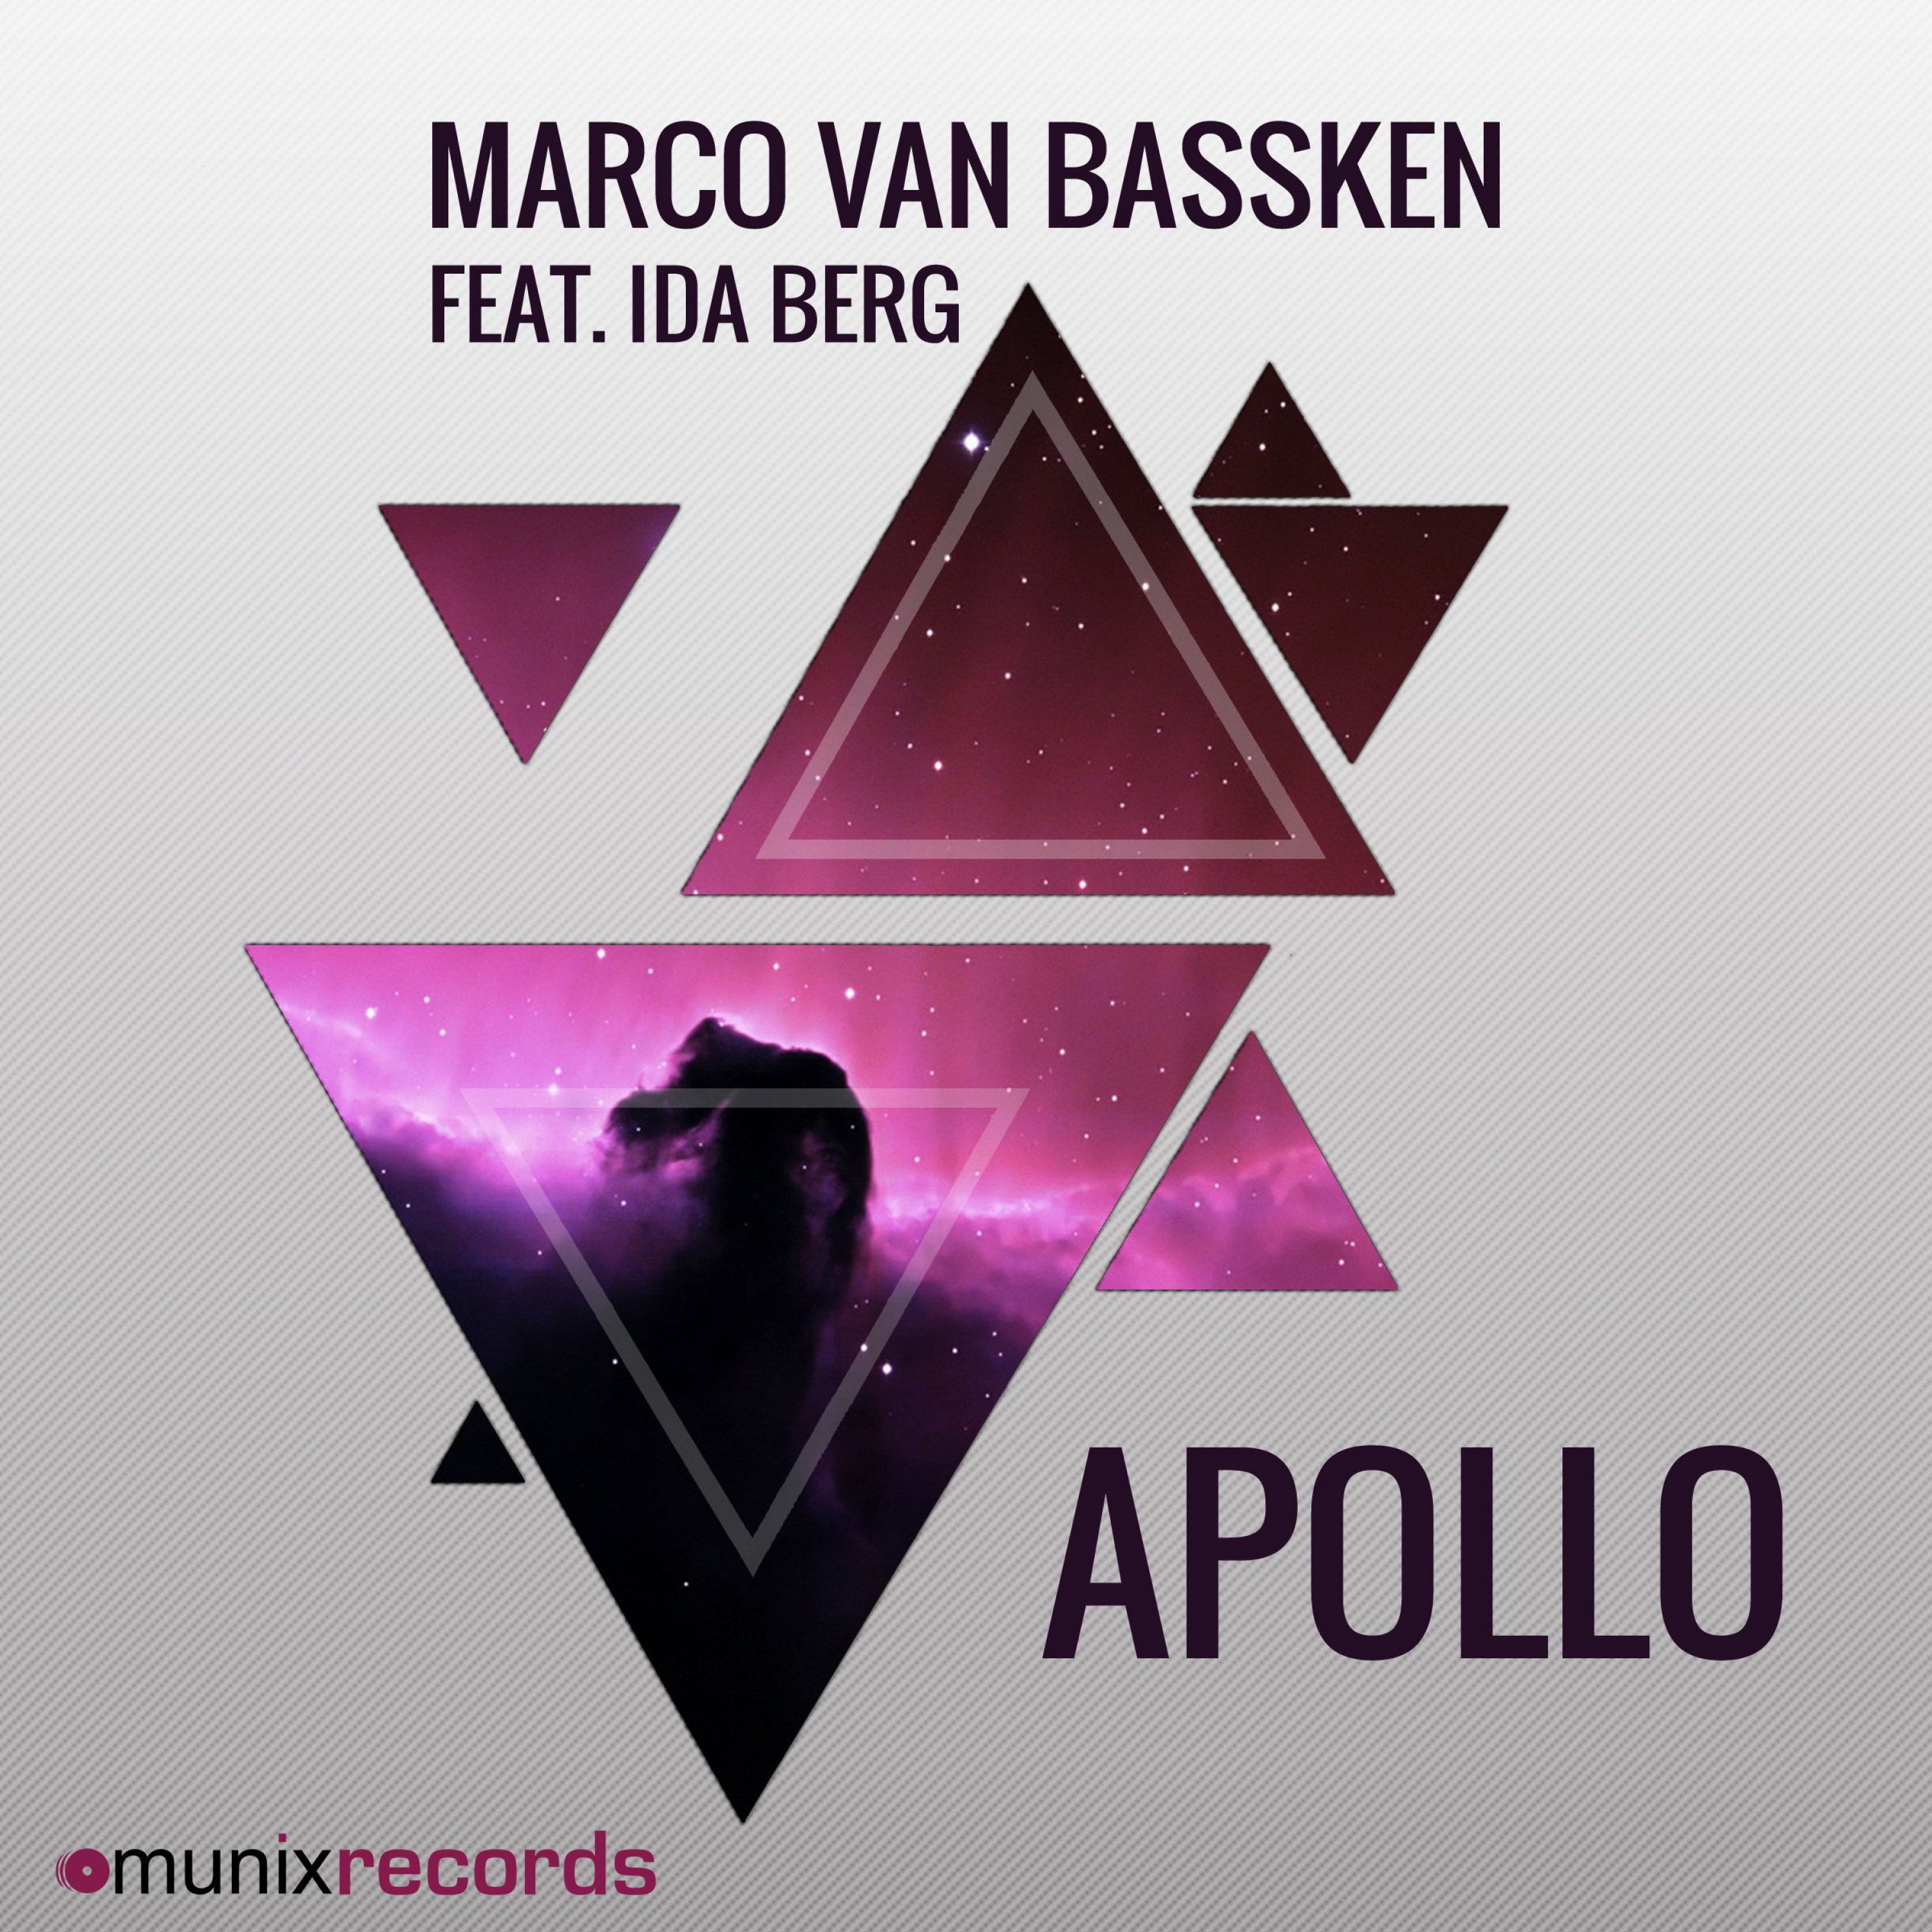 Apollo (Ti-Mo Remix)